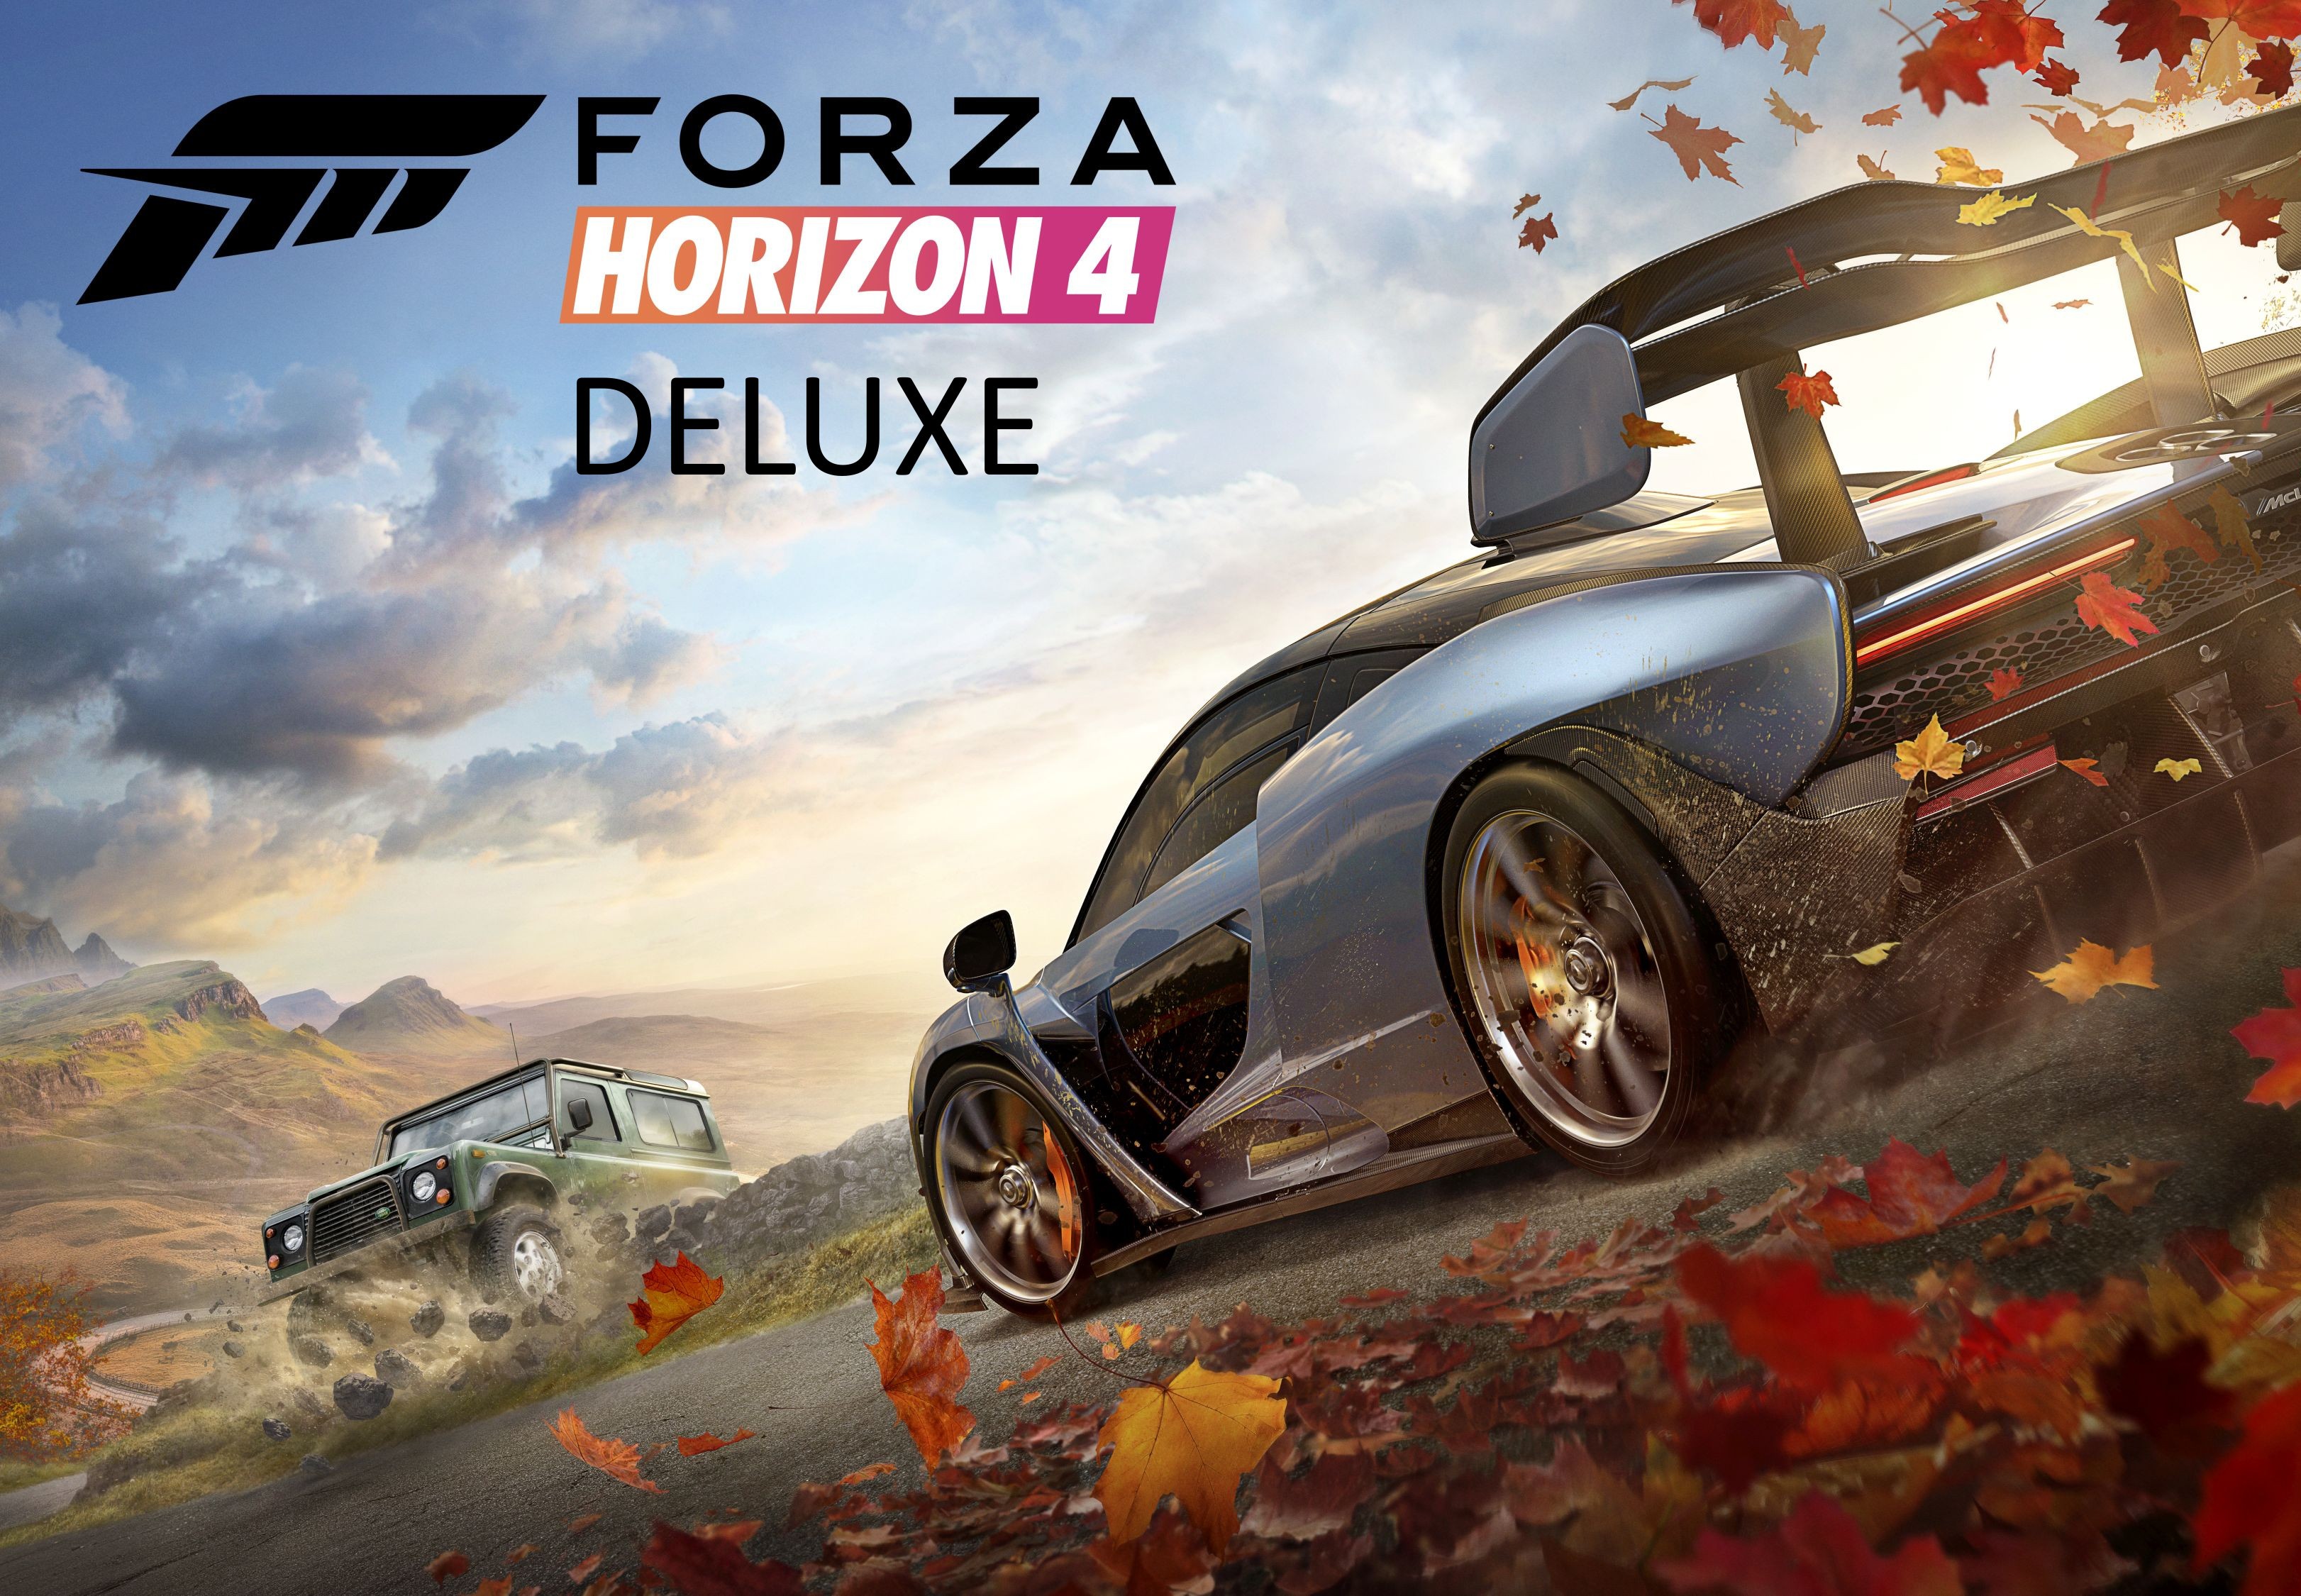 Forza Horizon 4 Deluxe Edition EG XBOX One / Xbox Series X,S / Windows 10 CD Key